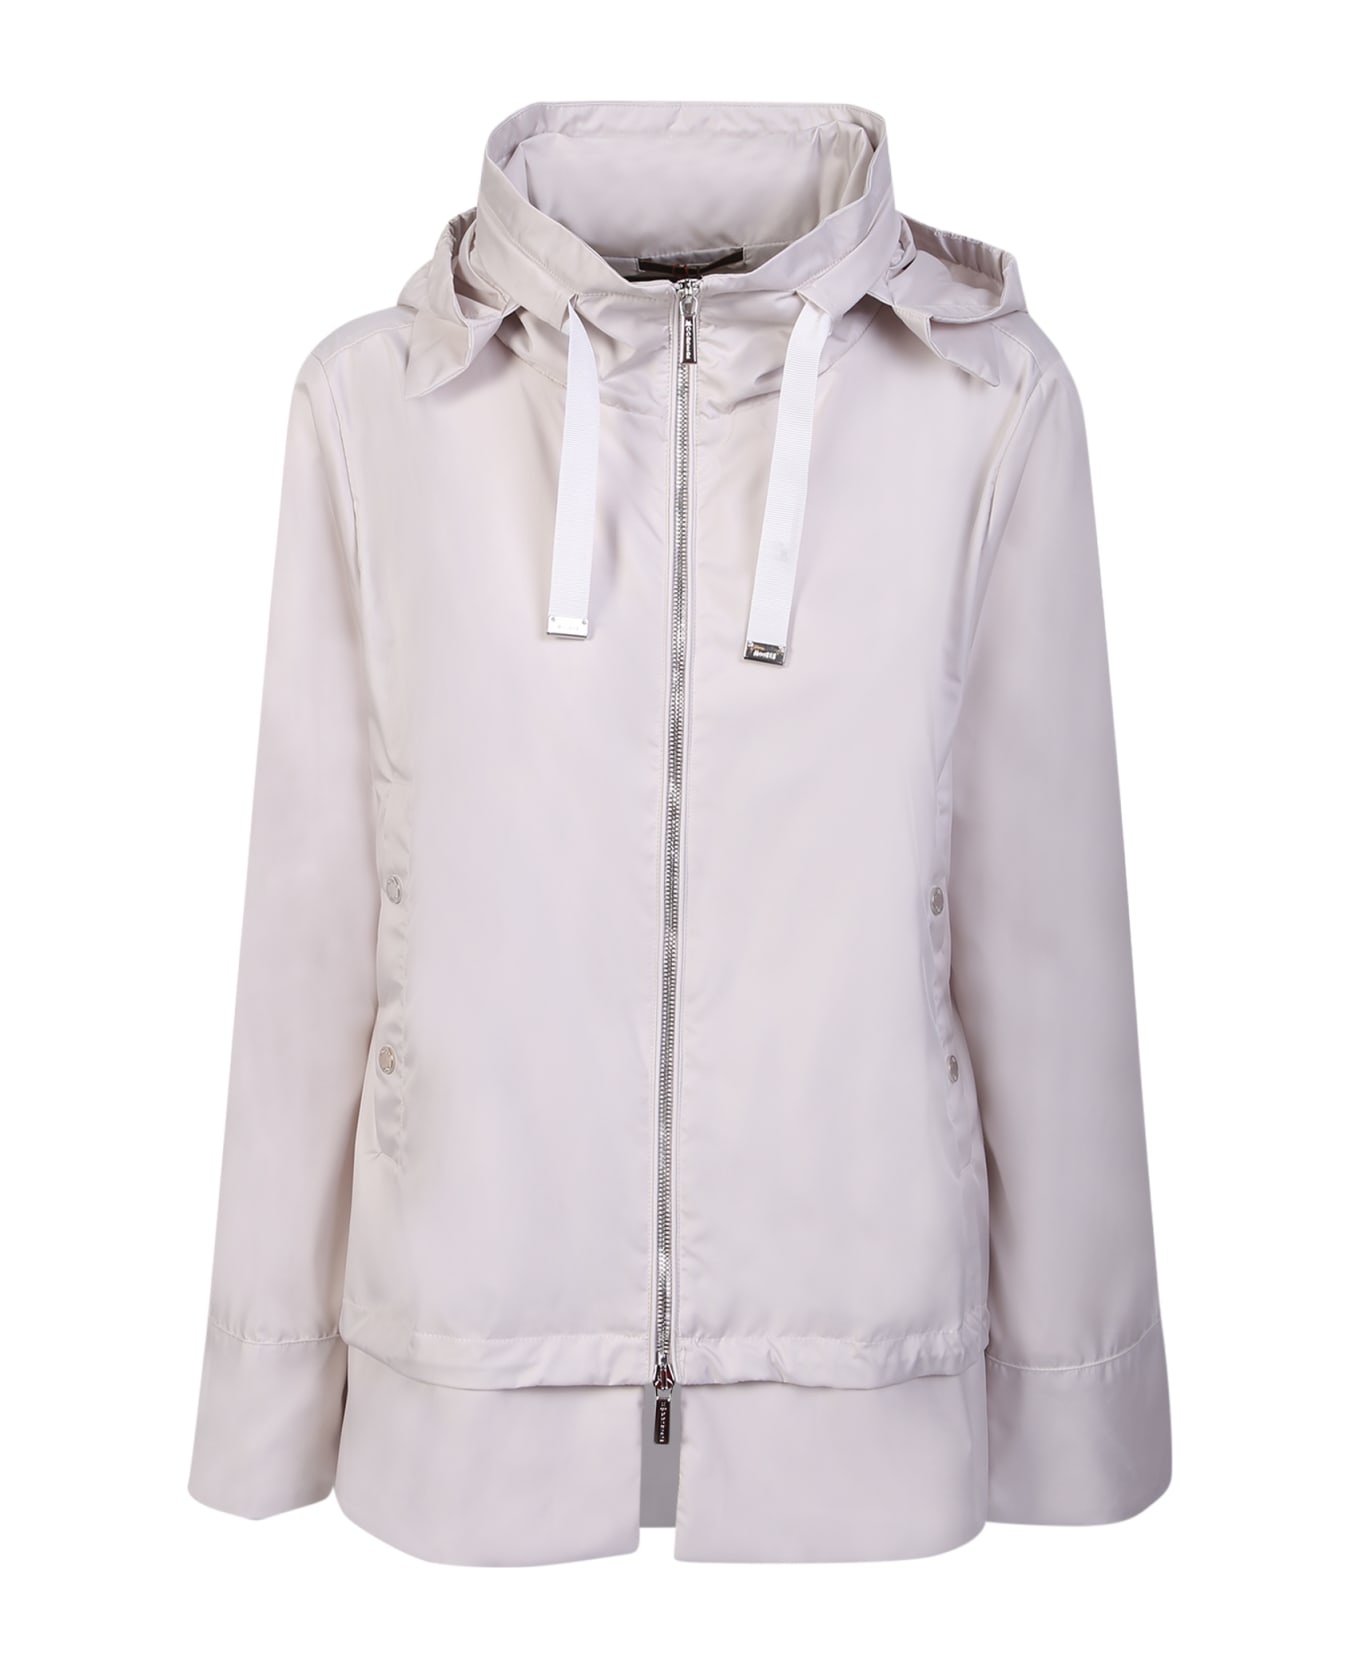 Moorer Sinia-wk Ivory Jacket - White コート